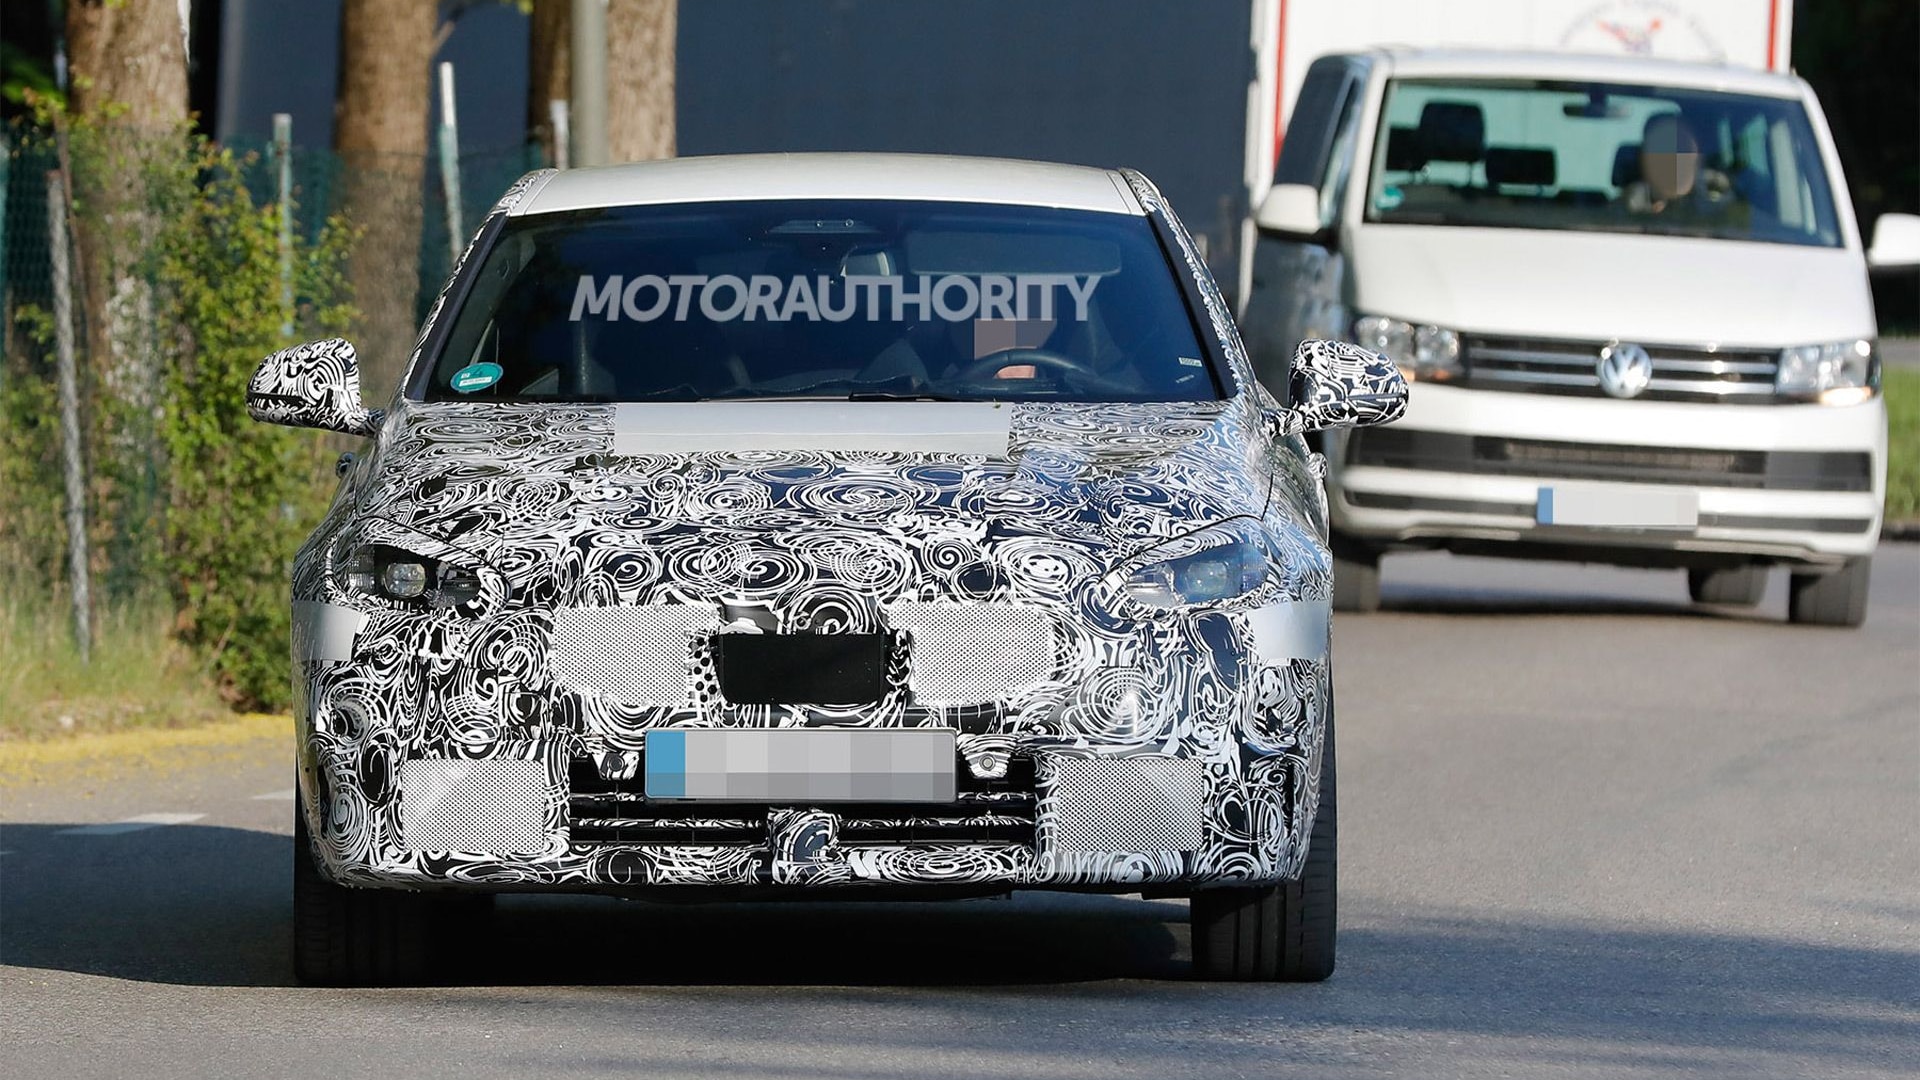 2023 BMW M135i Hatchback facelift spy shots - Photo credit: S. Baldauf/SB-Medien